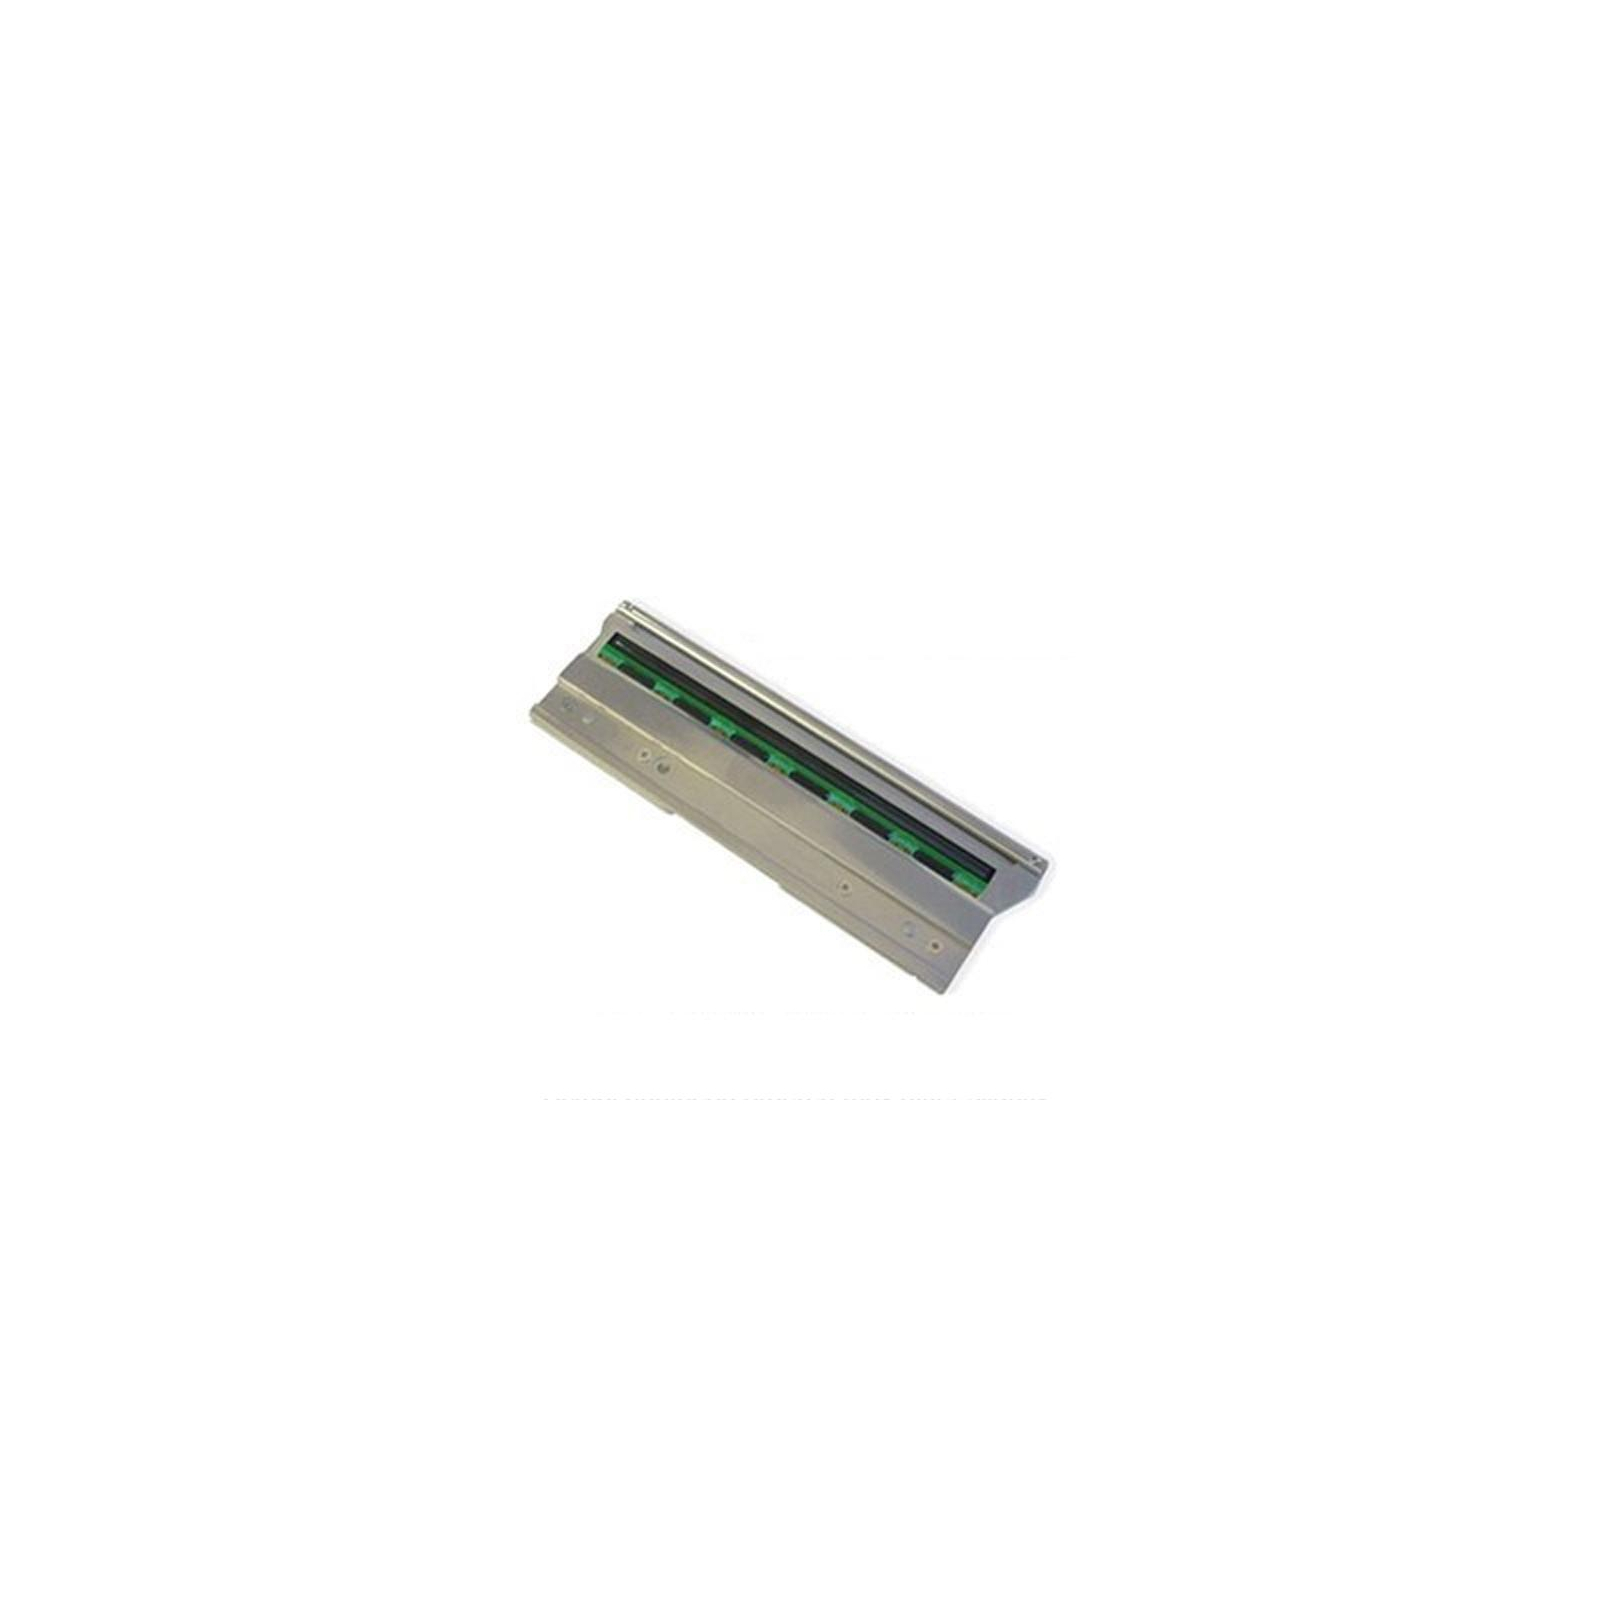 Печатающая головка для термопринтера Citizen CL-S300, CL-S321; 200 dpi (PPM80012-00)